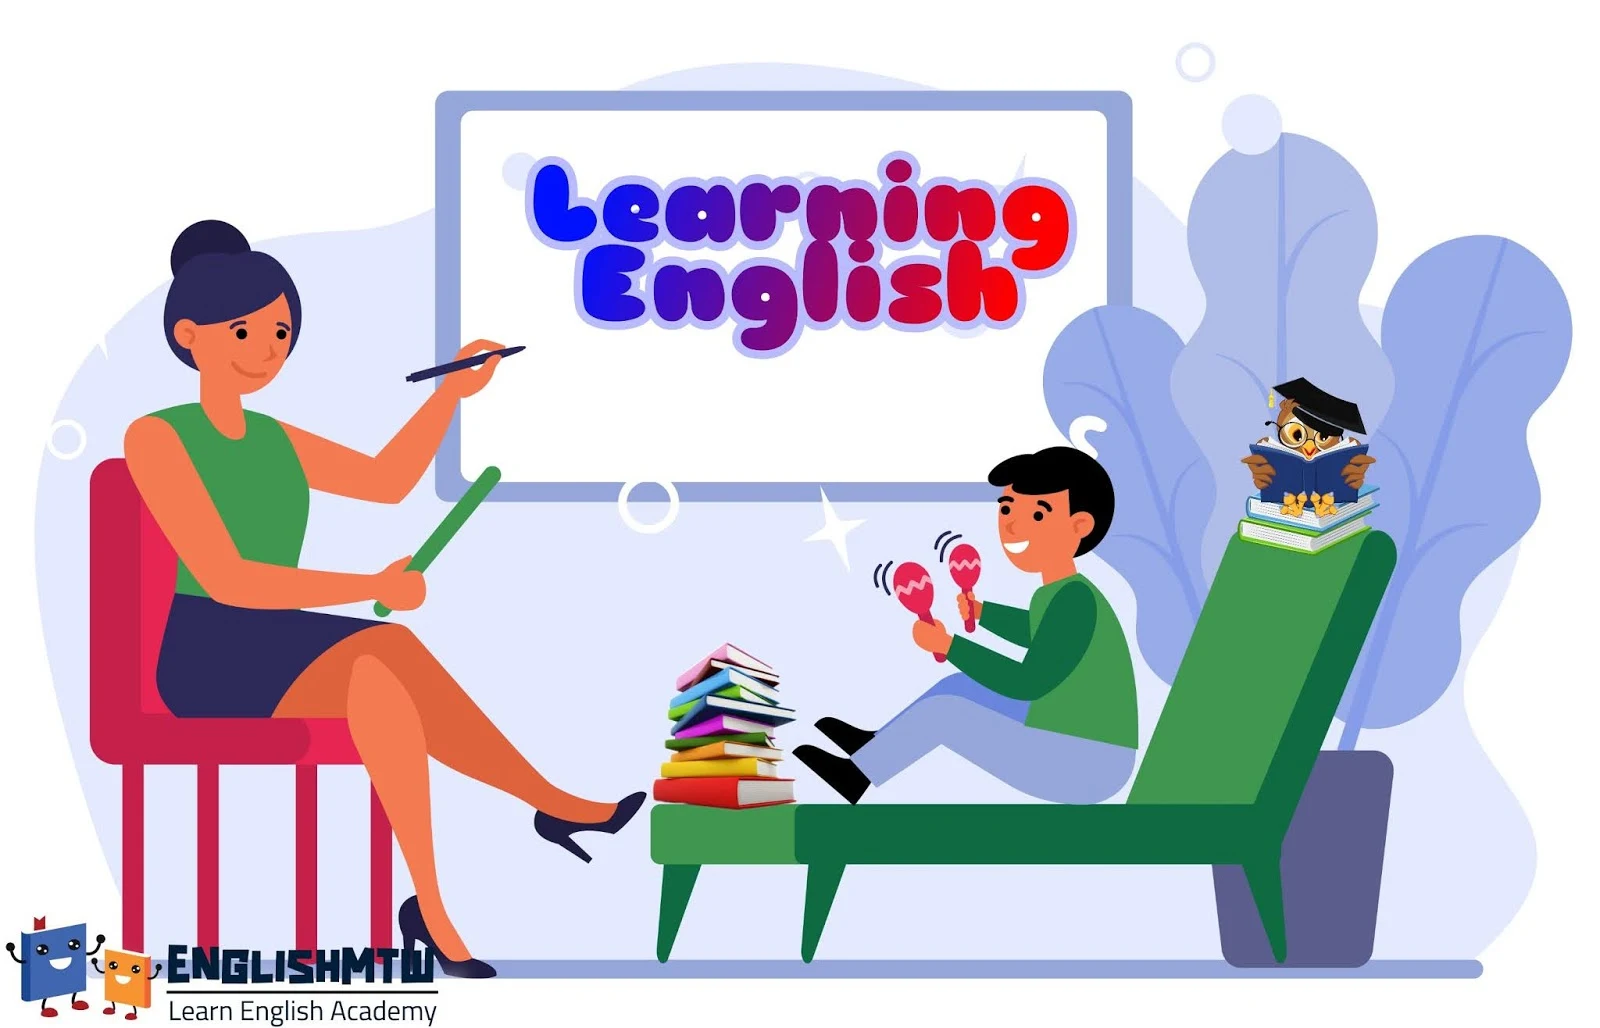 تعليم اللغة الانجليزية للاطفال : 6 أفكار ممتعة للتعلم اليومي